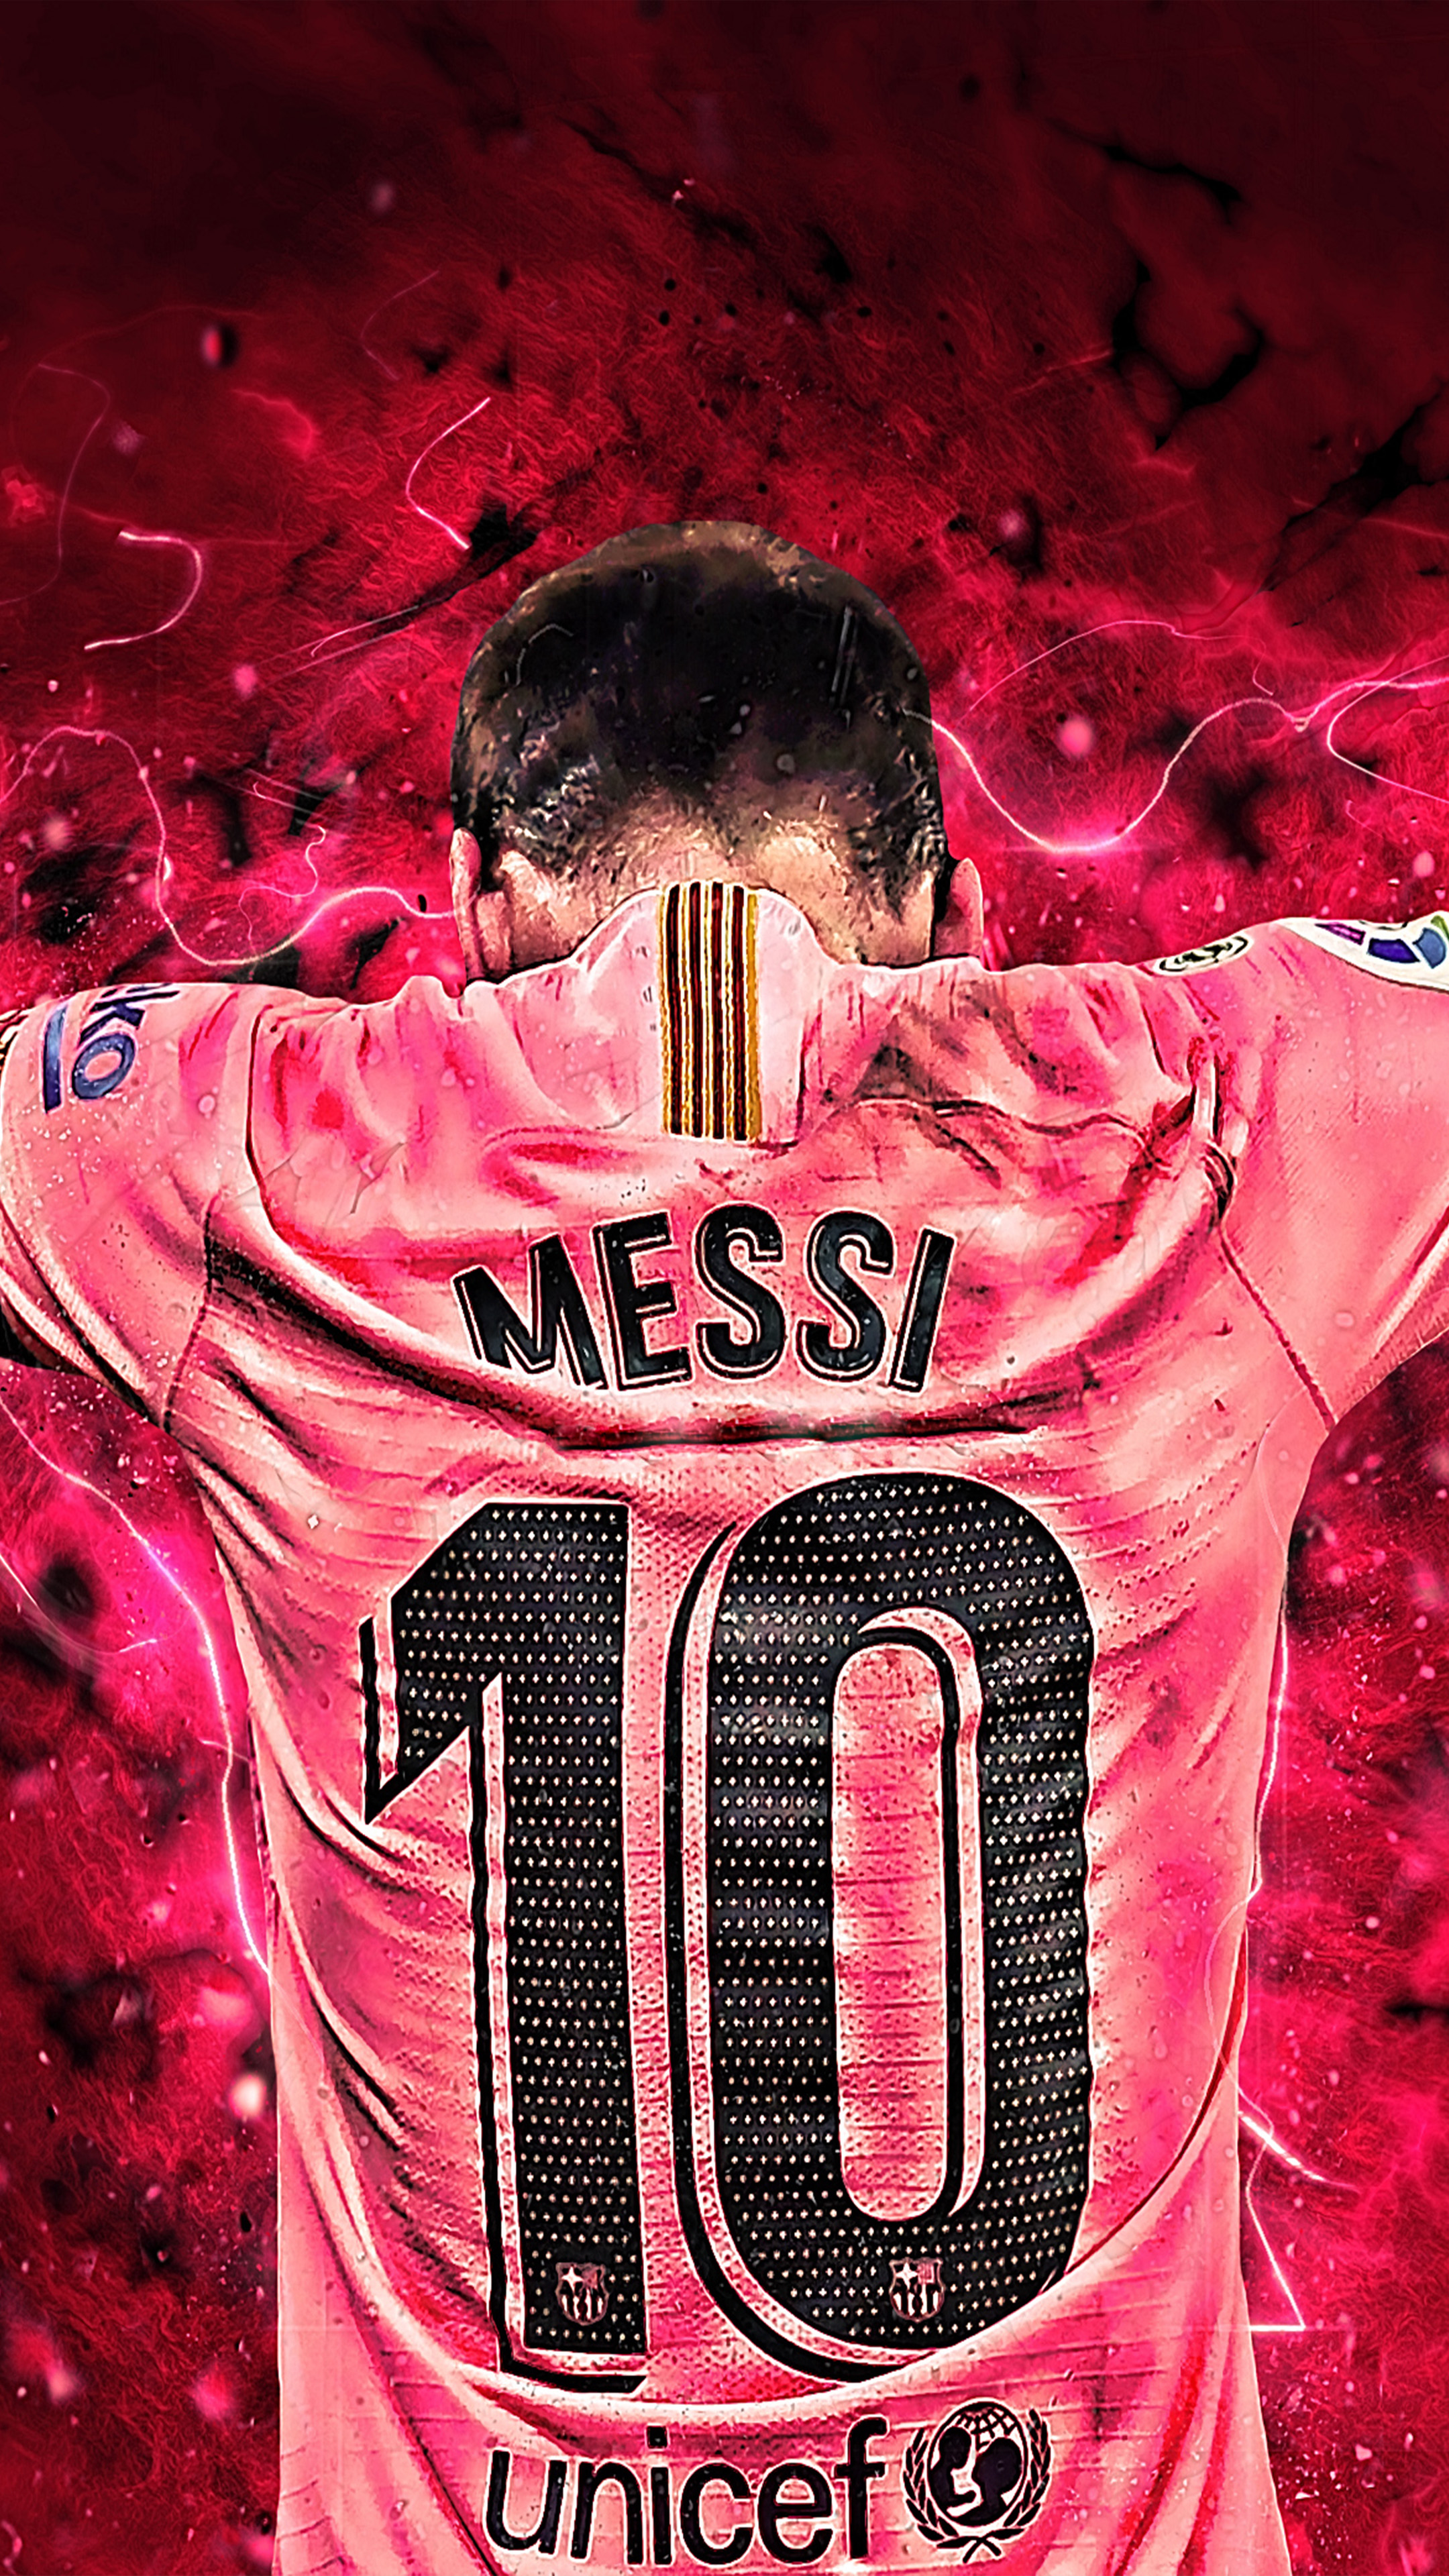 Với bức hình nền nghệ thuật của Messi đầy màu sắc và tinh tế này, bạn sẽ cảm nhận được được cảm xúc vô cùng đặc biệt khi trang trí cho điện thoại hay máy tính của mình.